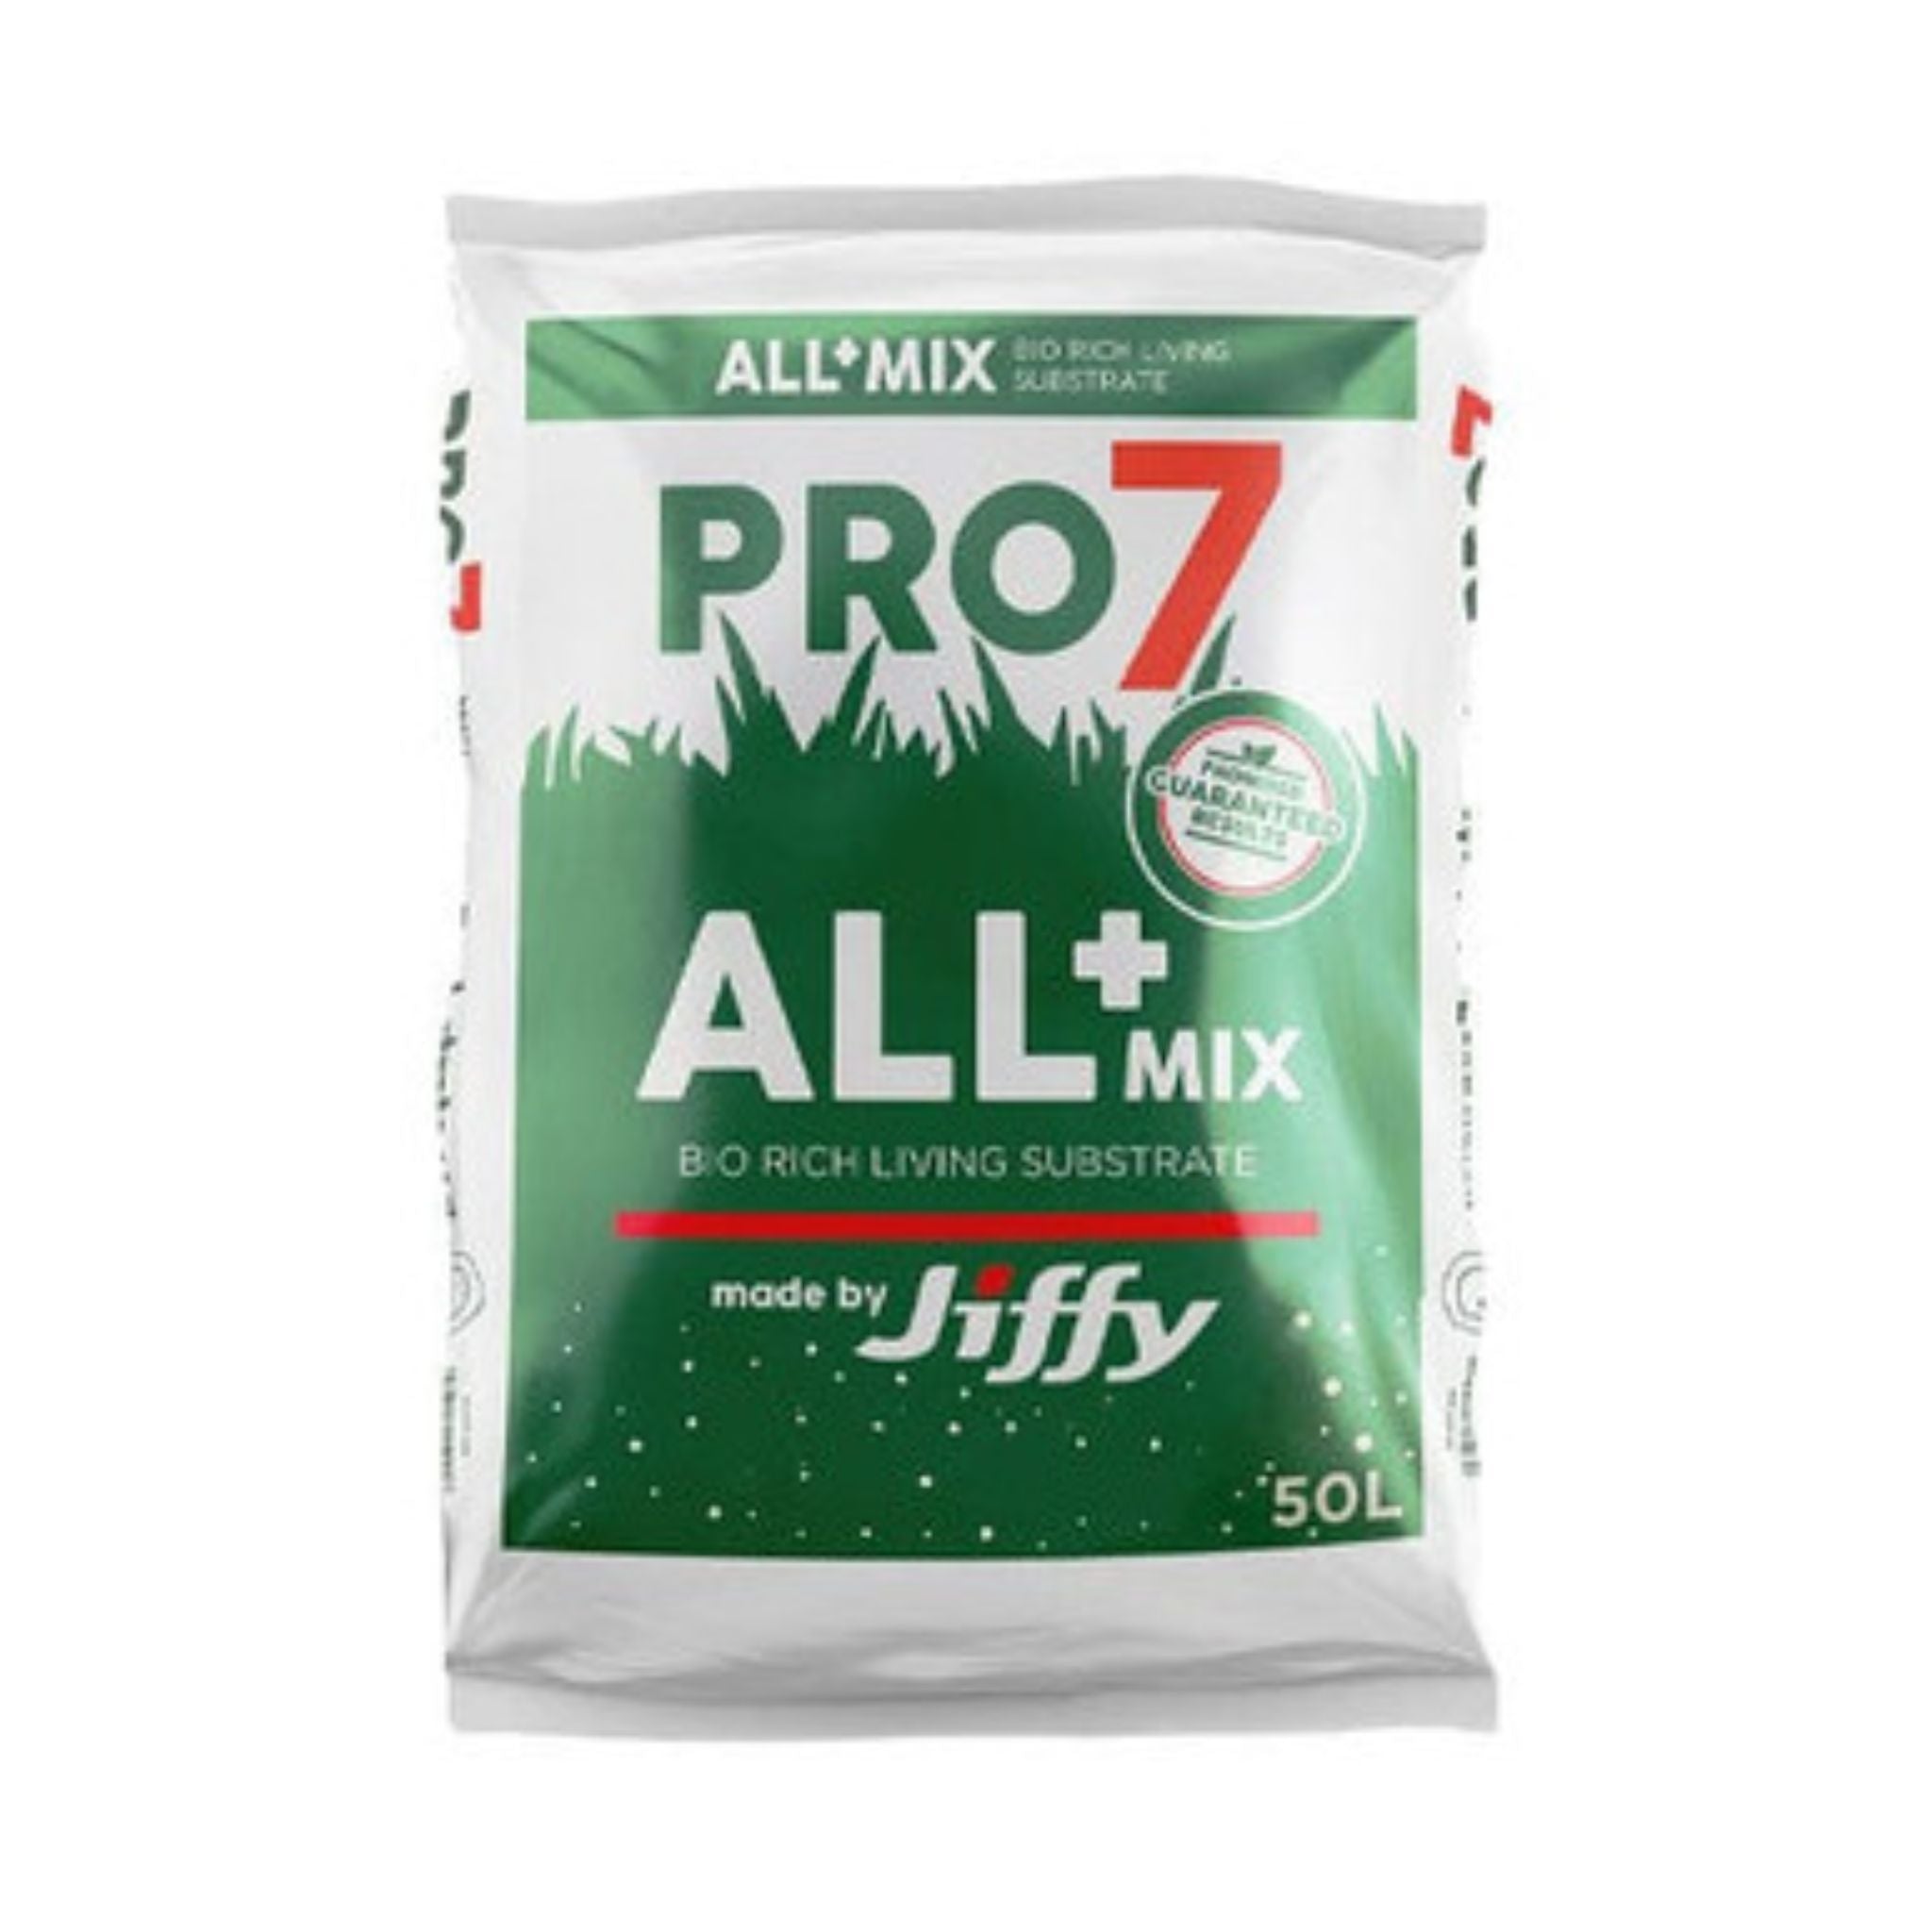 Jiffy Pro7 All+ Mix 50L